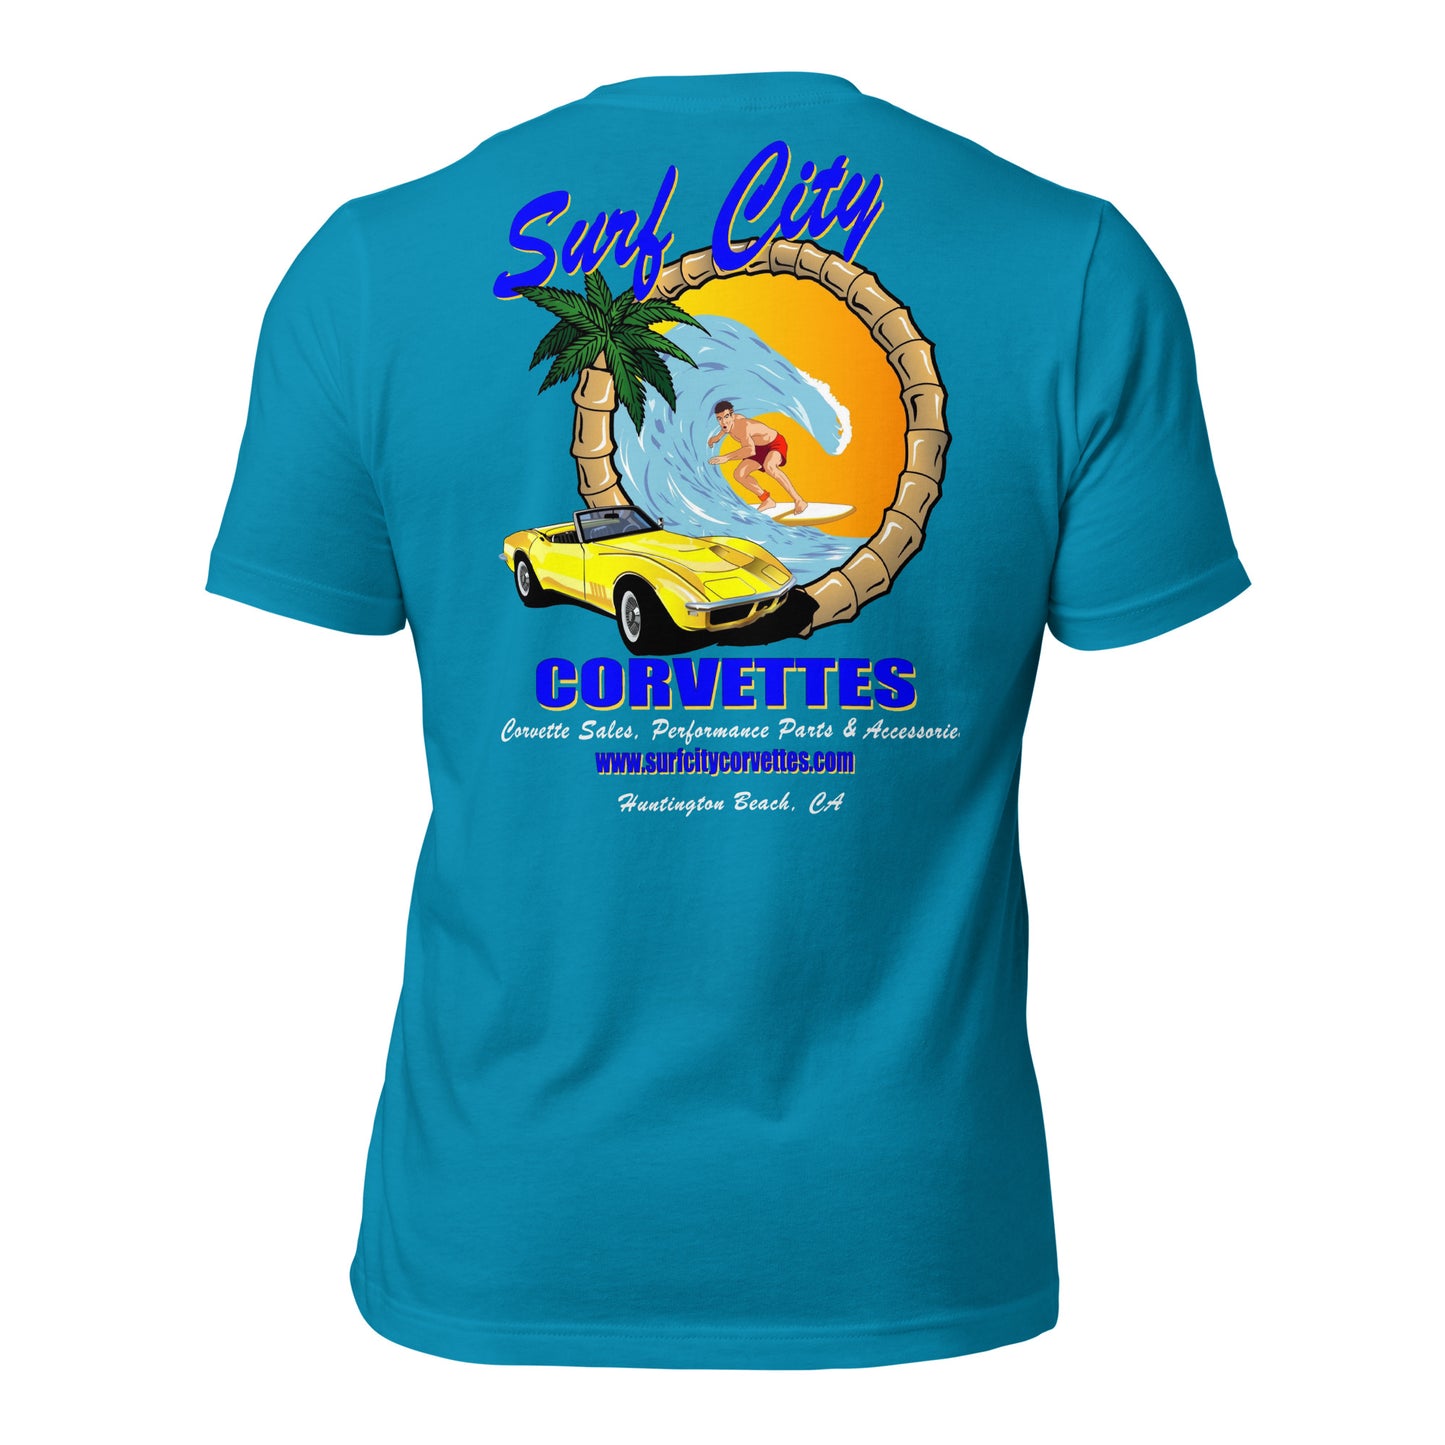 Surf City Corvettes T-Shirt - Aqua